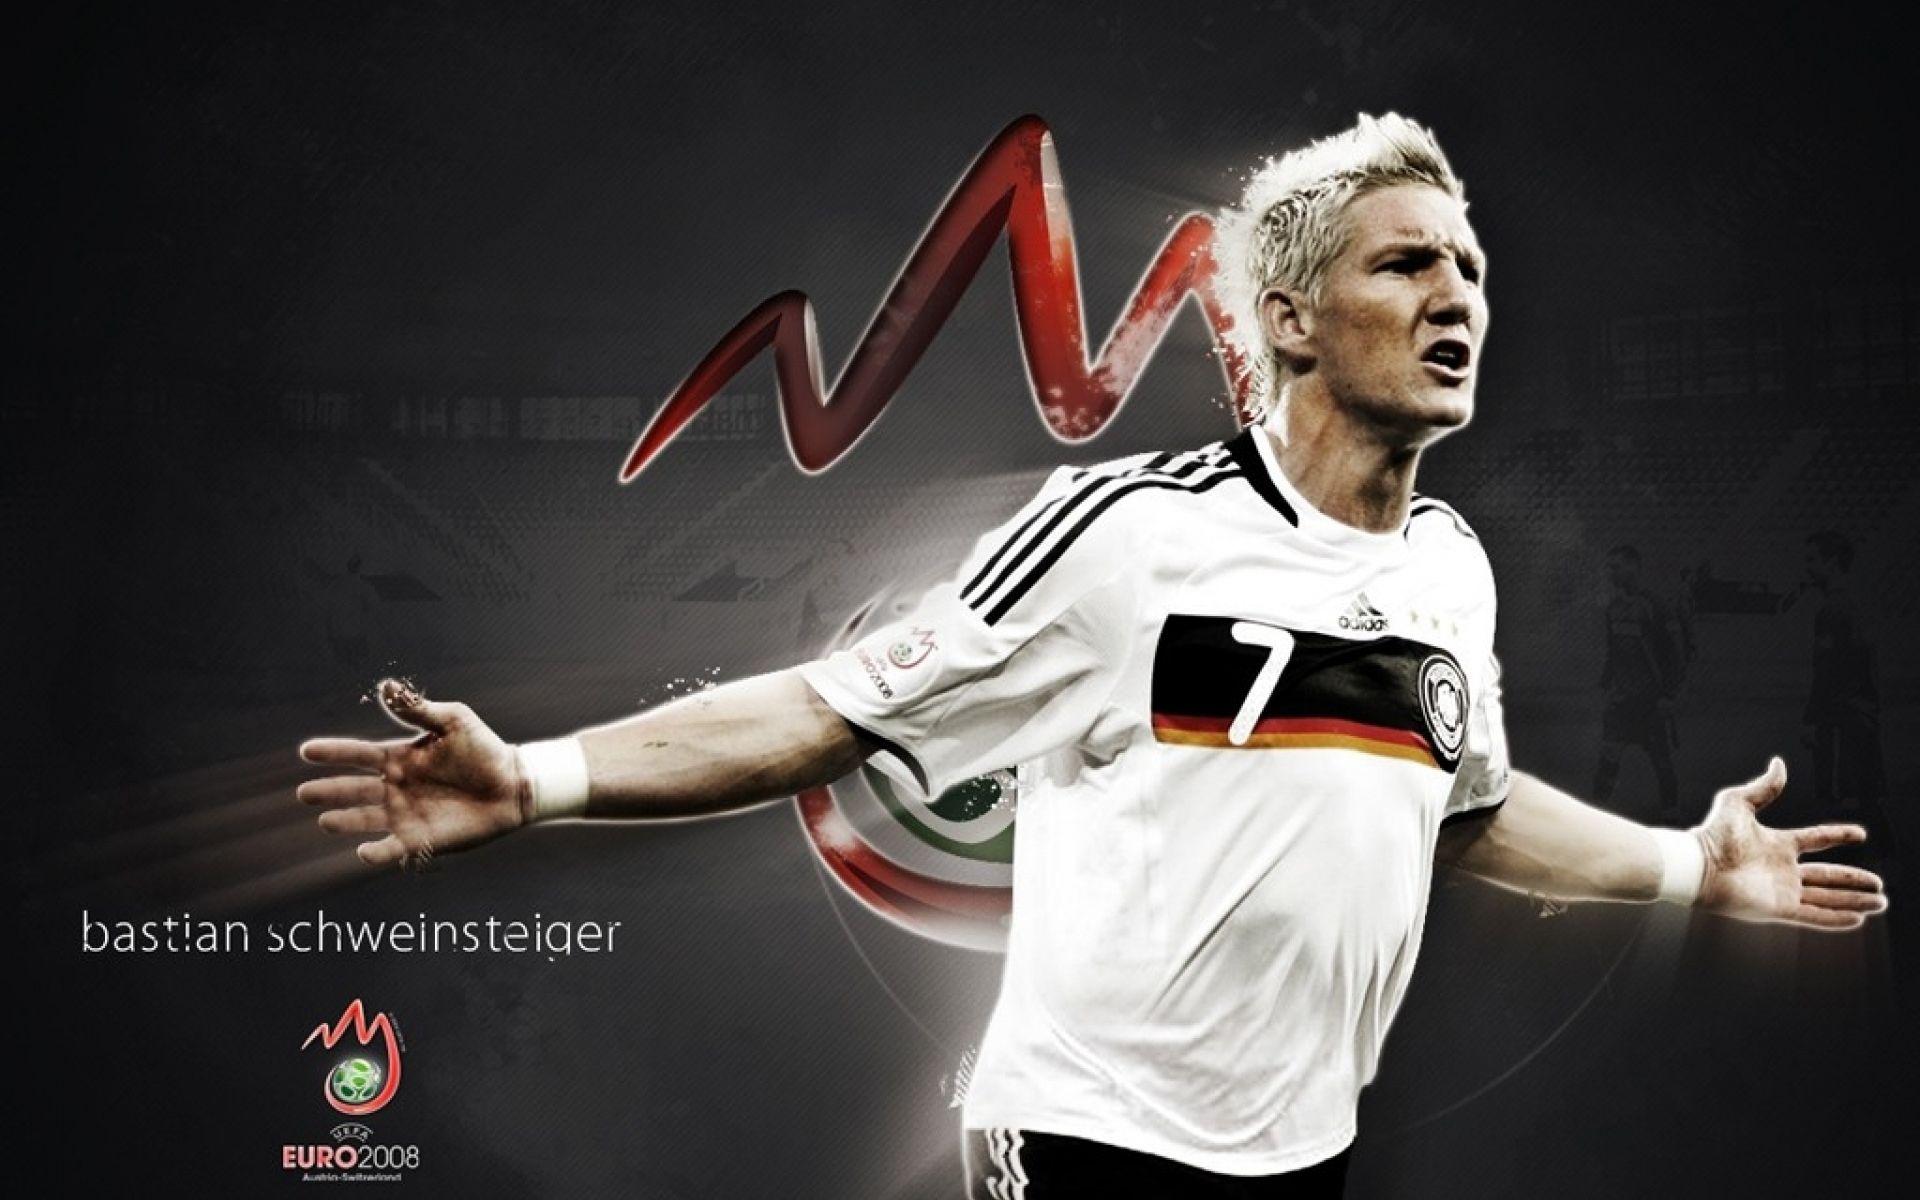 The best player of Bayern Bastian Schweinsteiger wallpaper